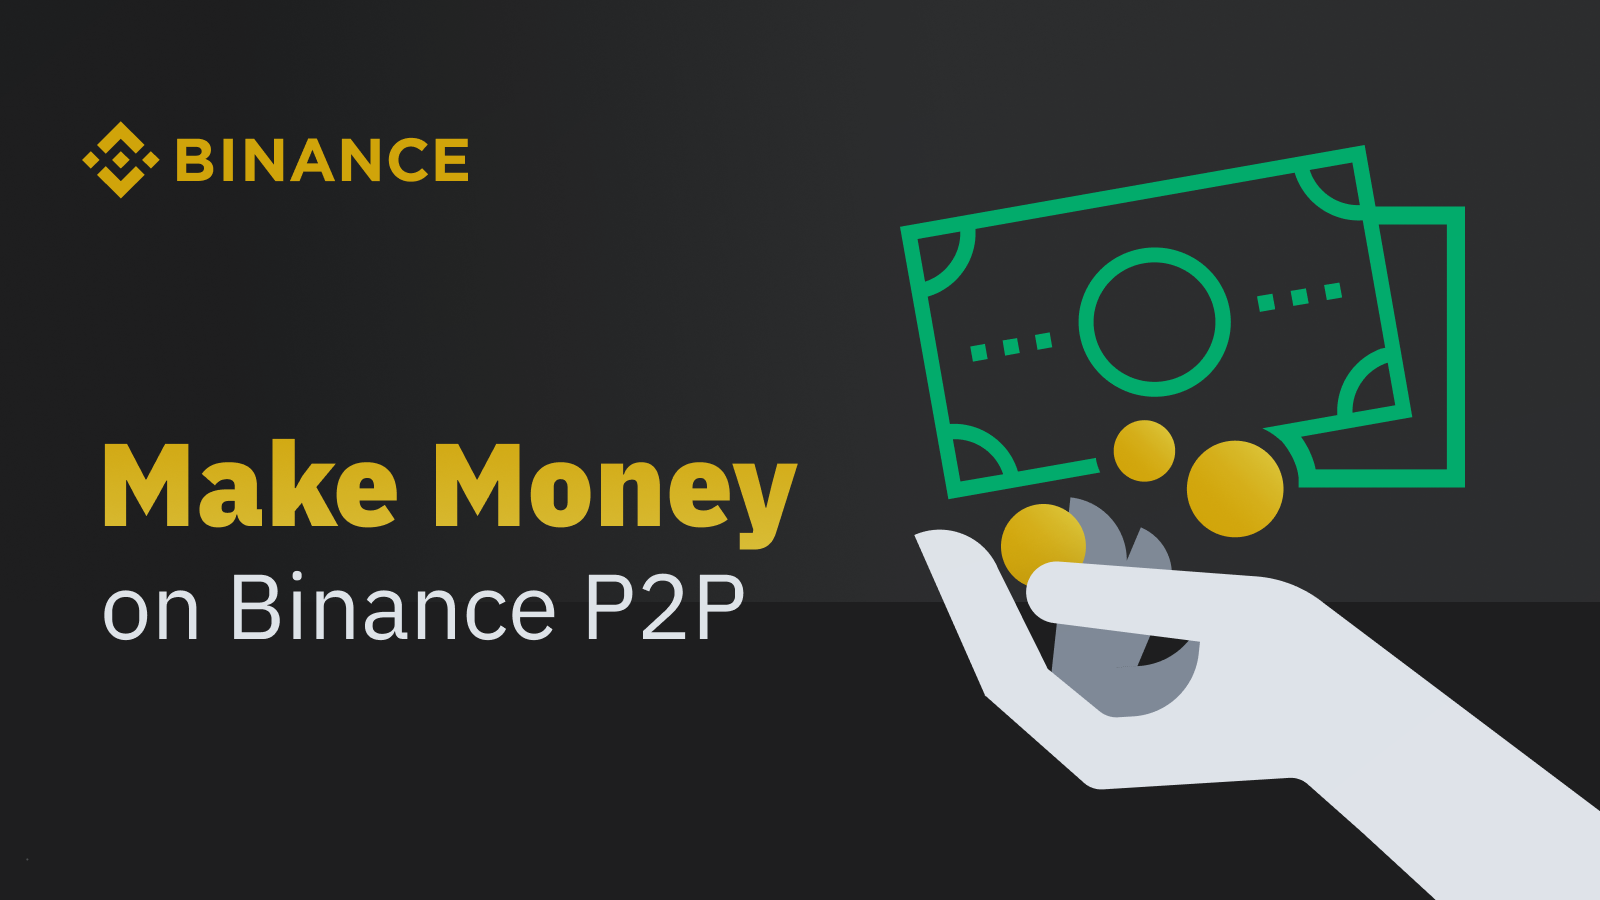 binance p2p cash in person